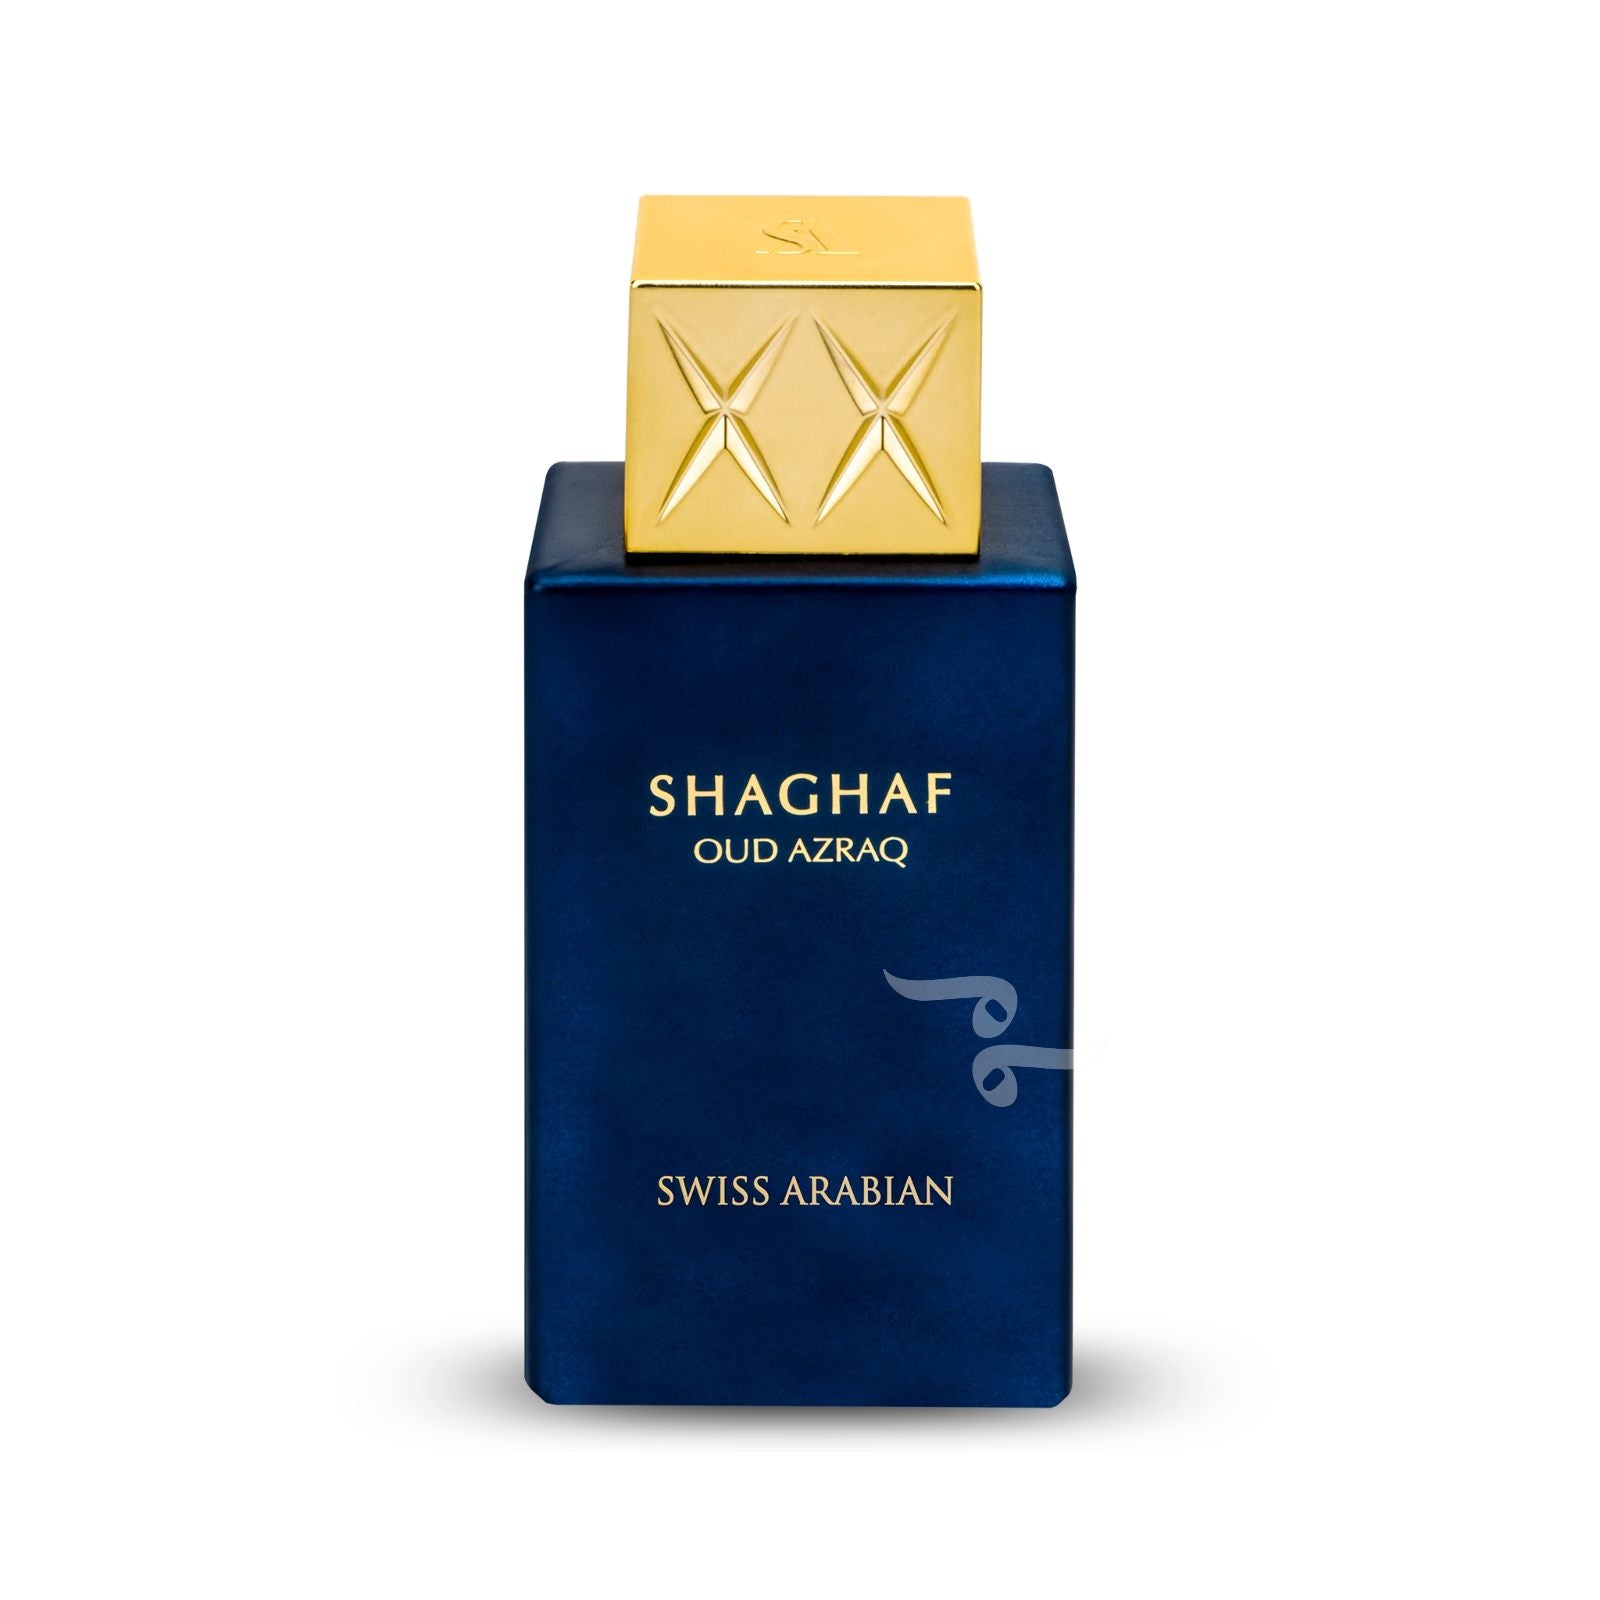 SHAGHAF OUD AZRAQ By Swiss Arabian